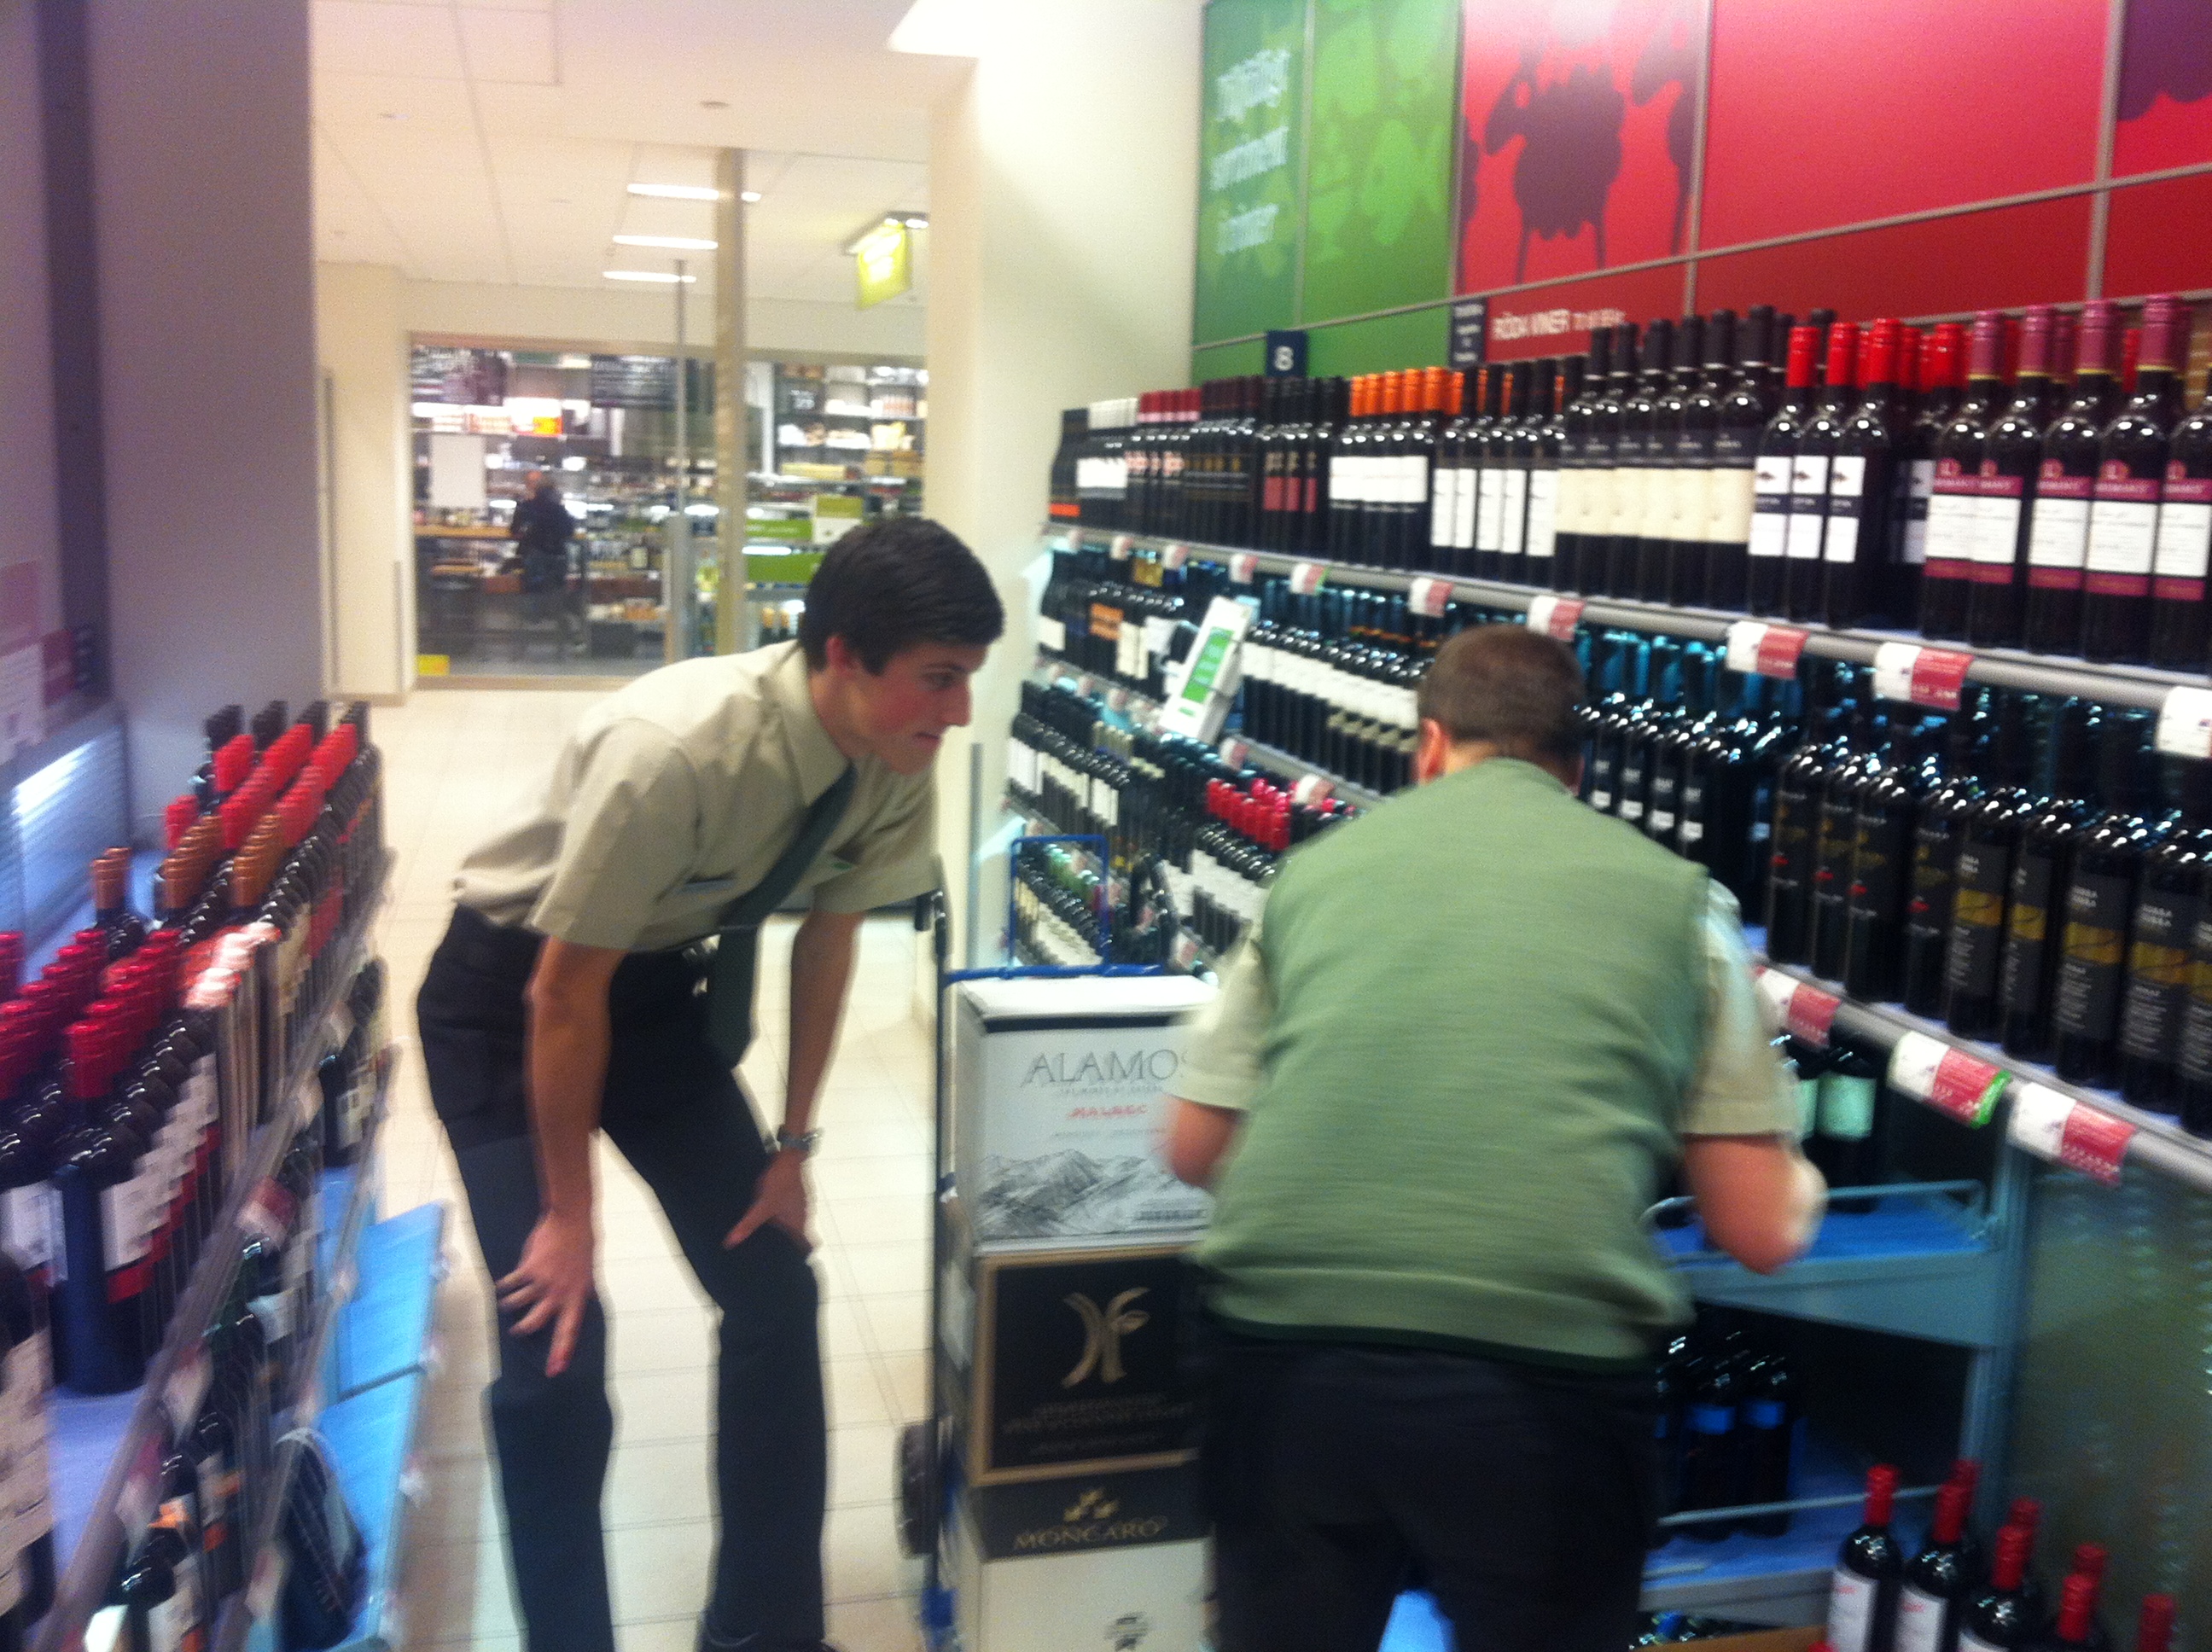 Här visar butikschefen hur Anton Abele ska ställa in flaskorna.